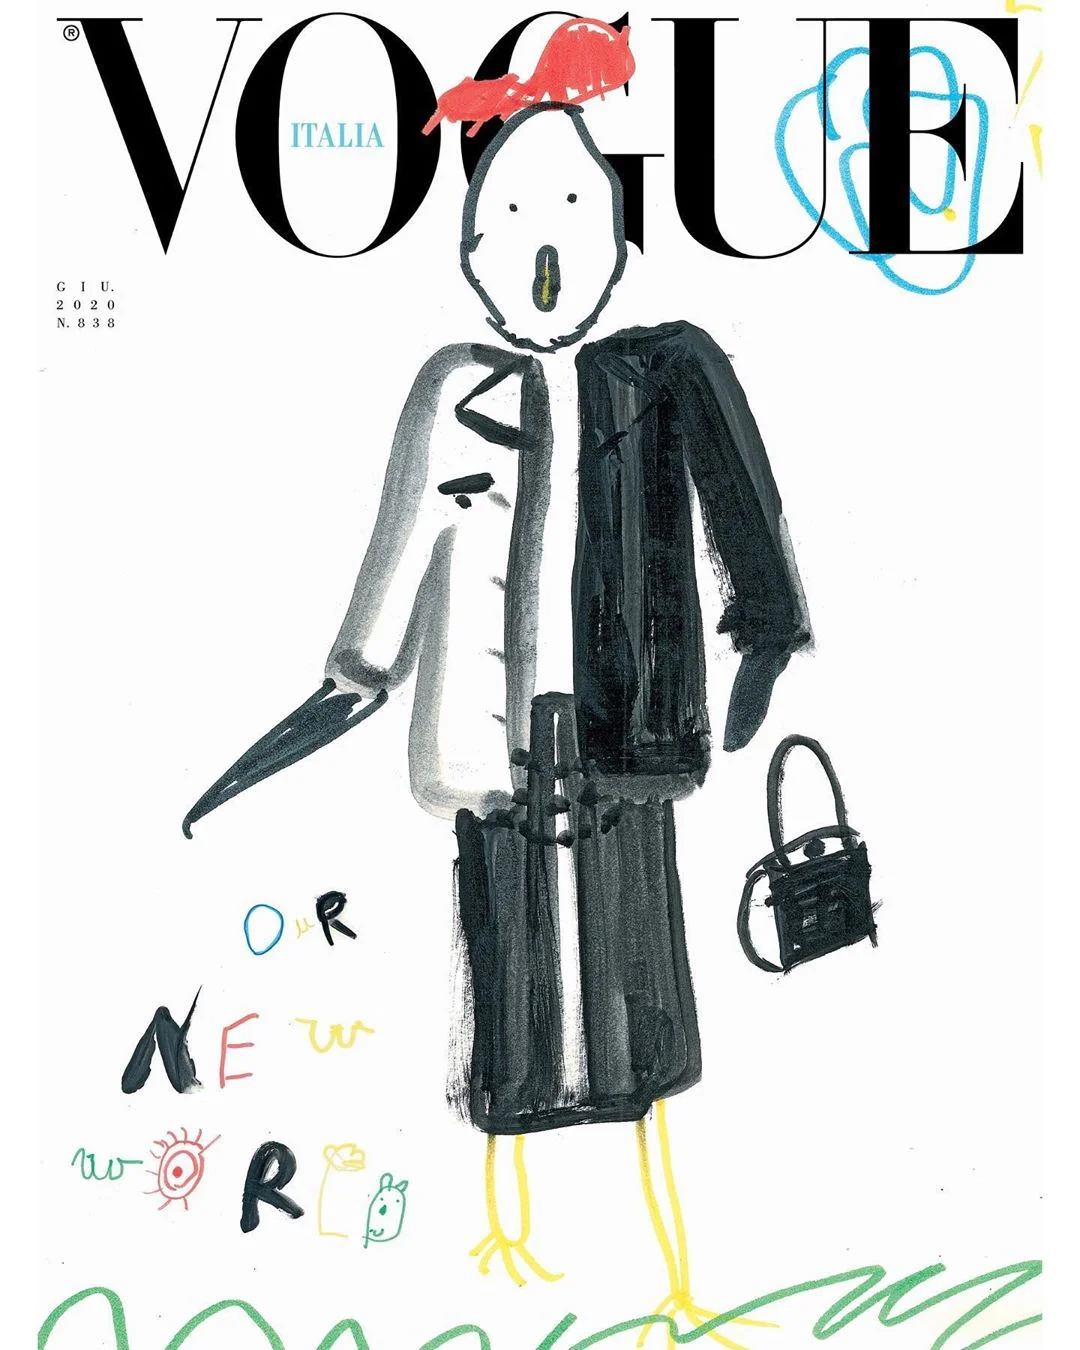 Уперше в історії обкладинку Vogue прикрасили дитячі малюнки - фото 480762